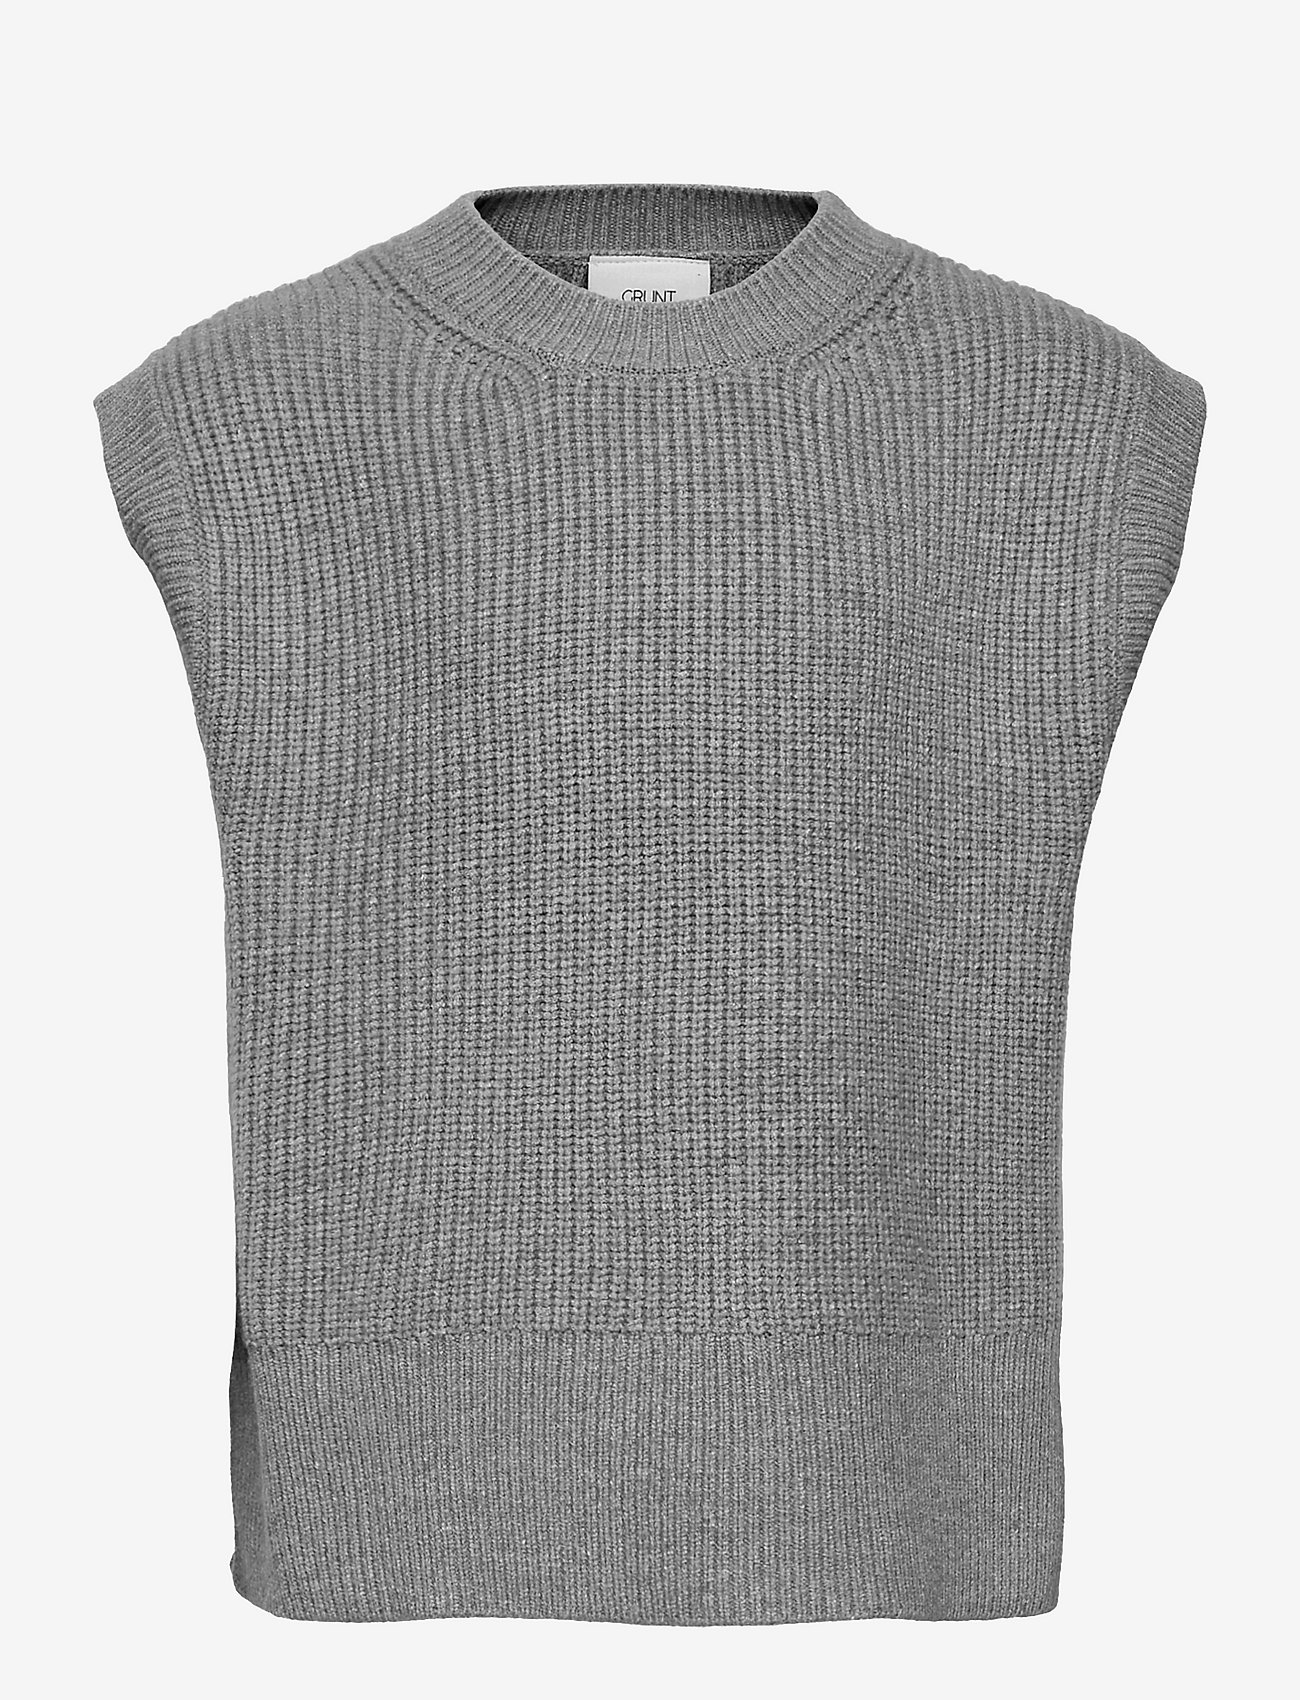 Grunt - Ann Knit Vest - najniższe ceny - grey melange - 0